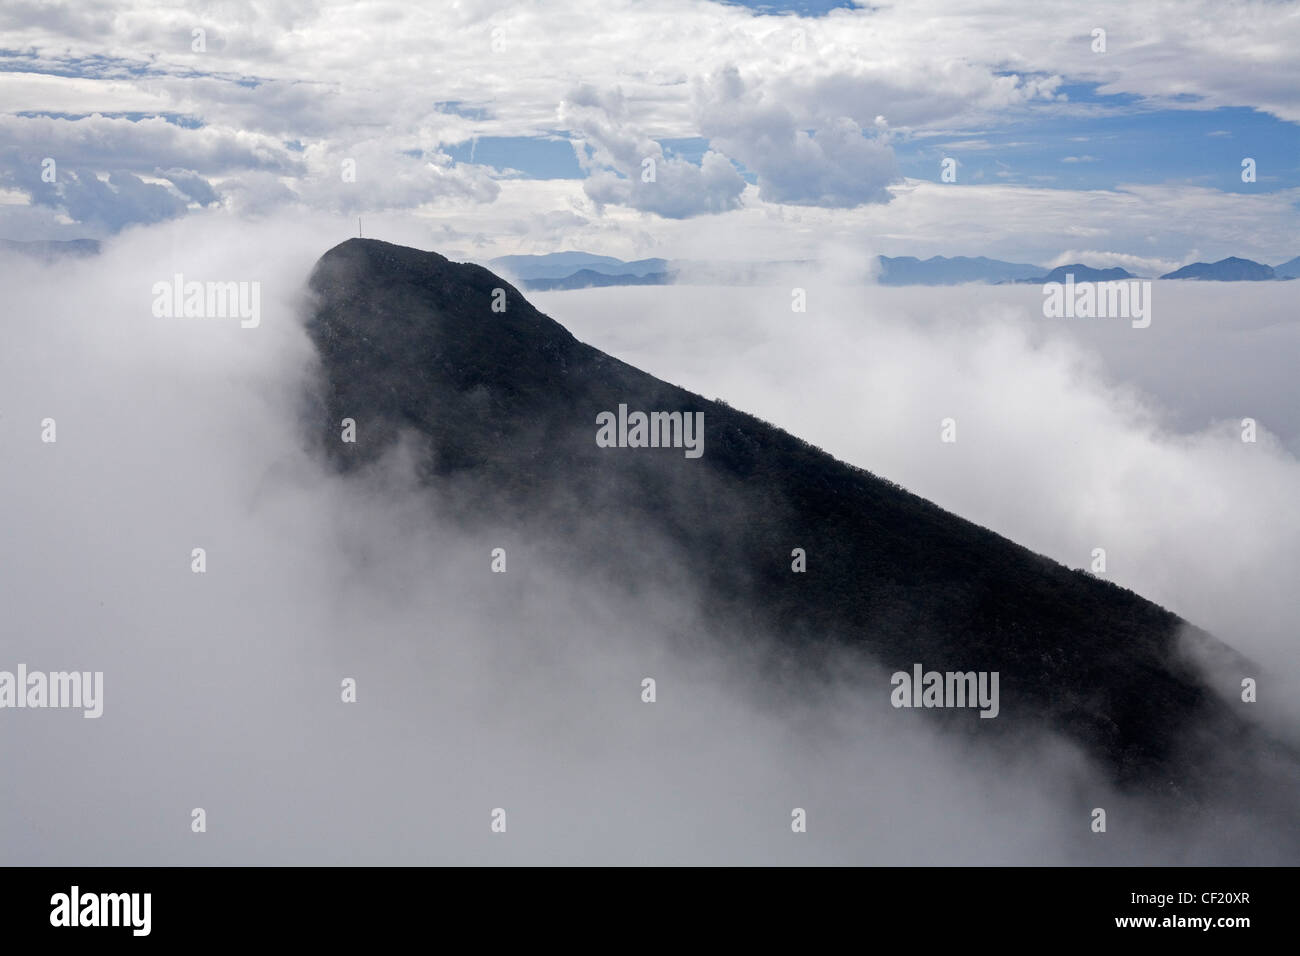 El Pico Norte oder der Norden Gipfel des Cerro De La Silla, in der Nähe von Monterrey, Mexiko. Stockfoto